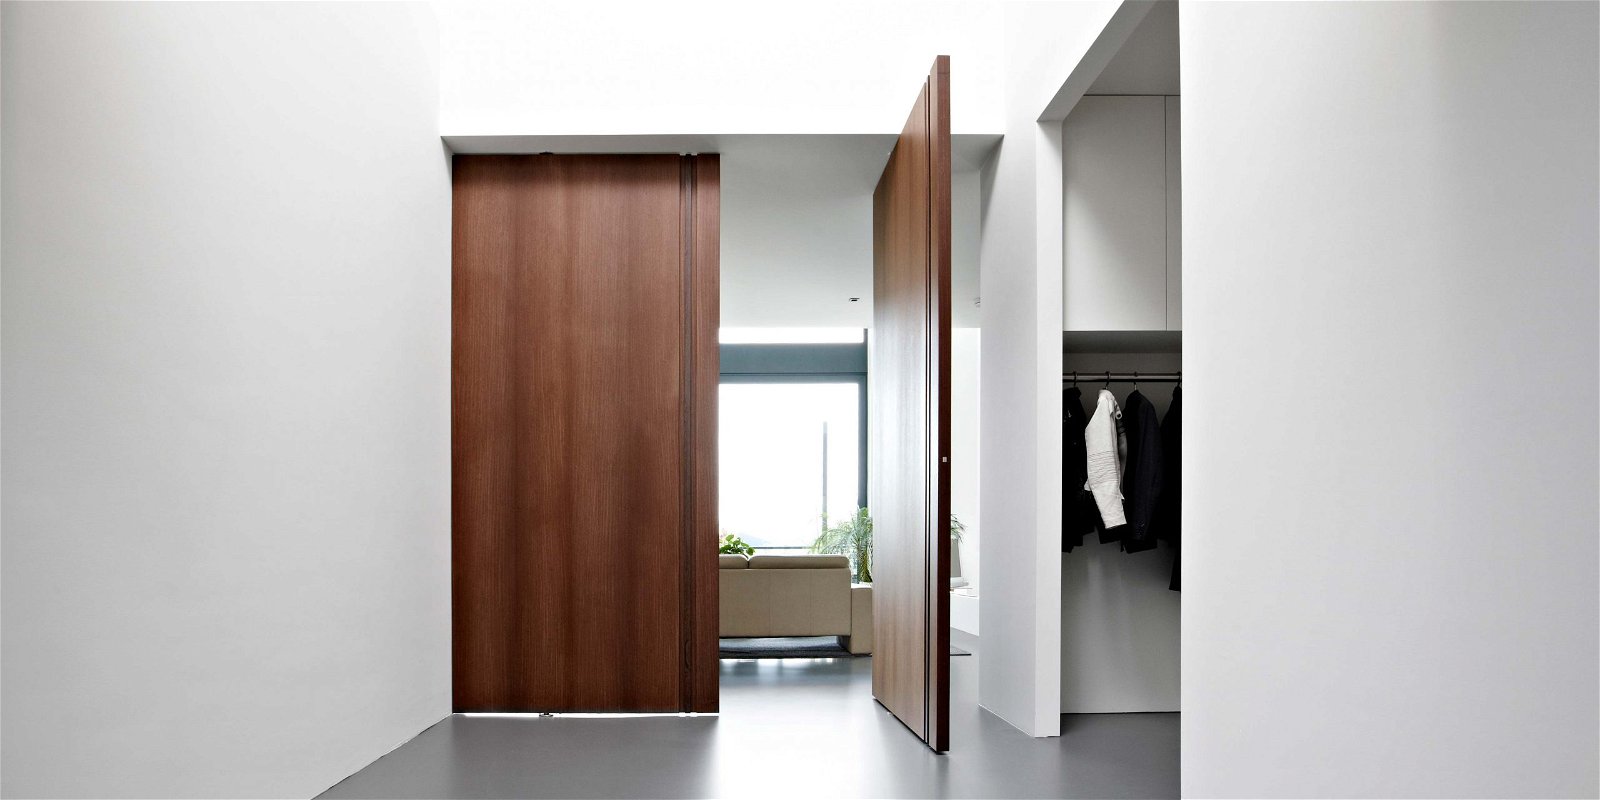 Wooden interior pivot doors with FritsJurgens pivot hinge inside.